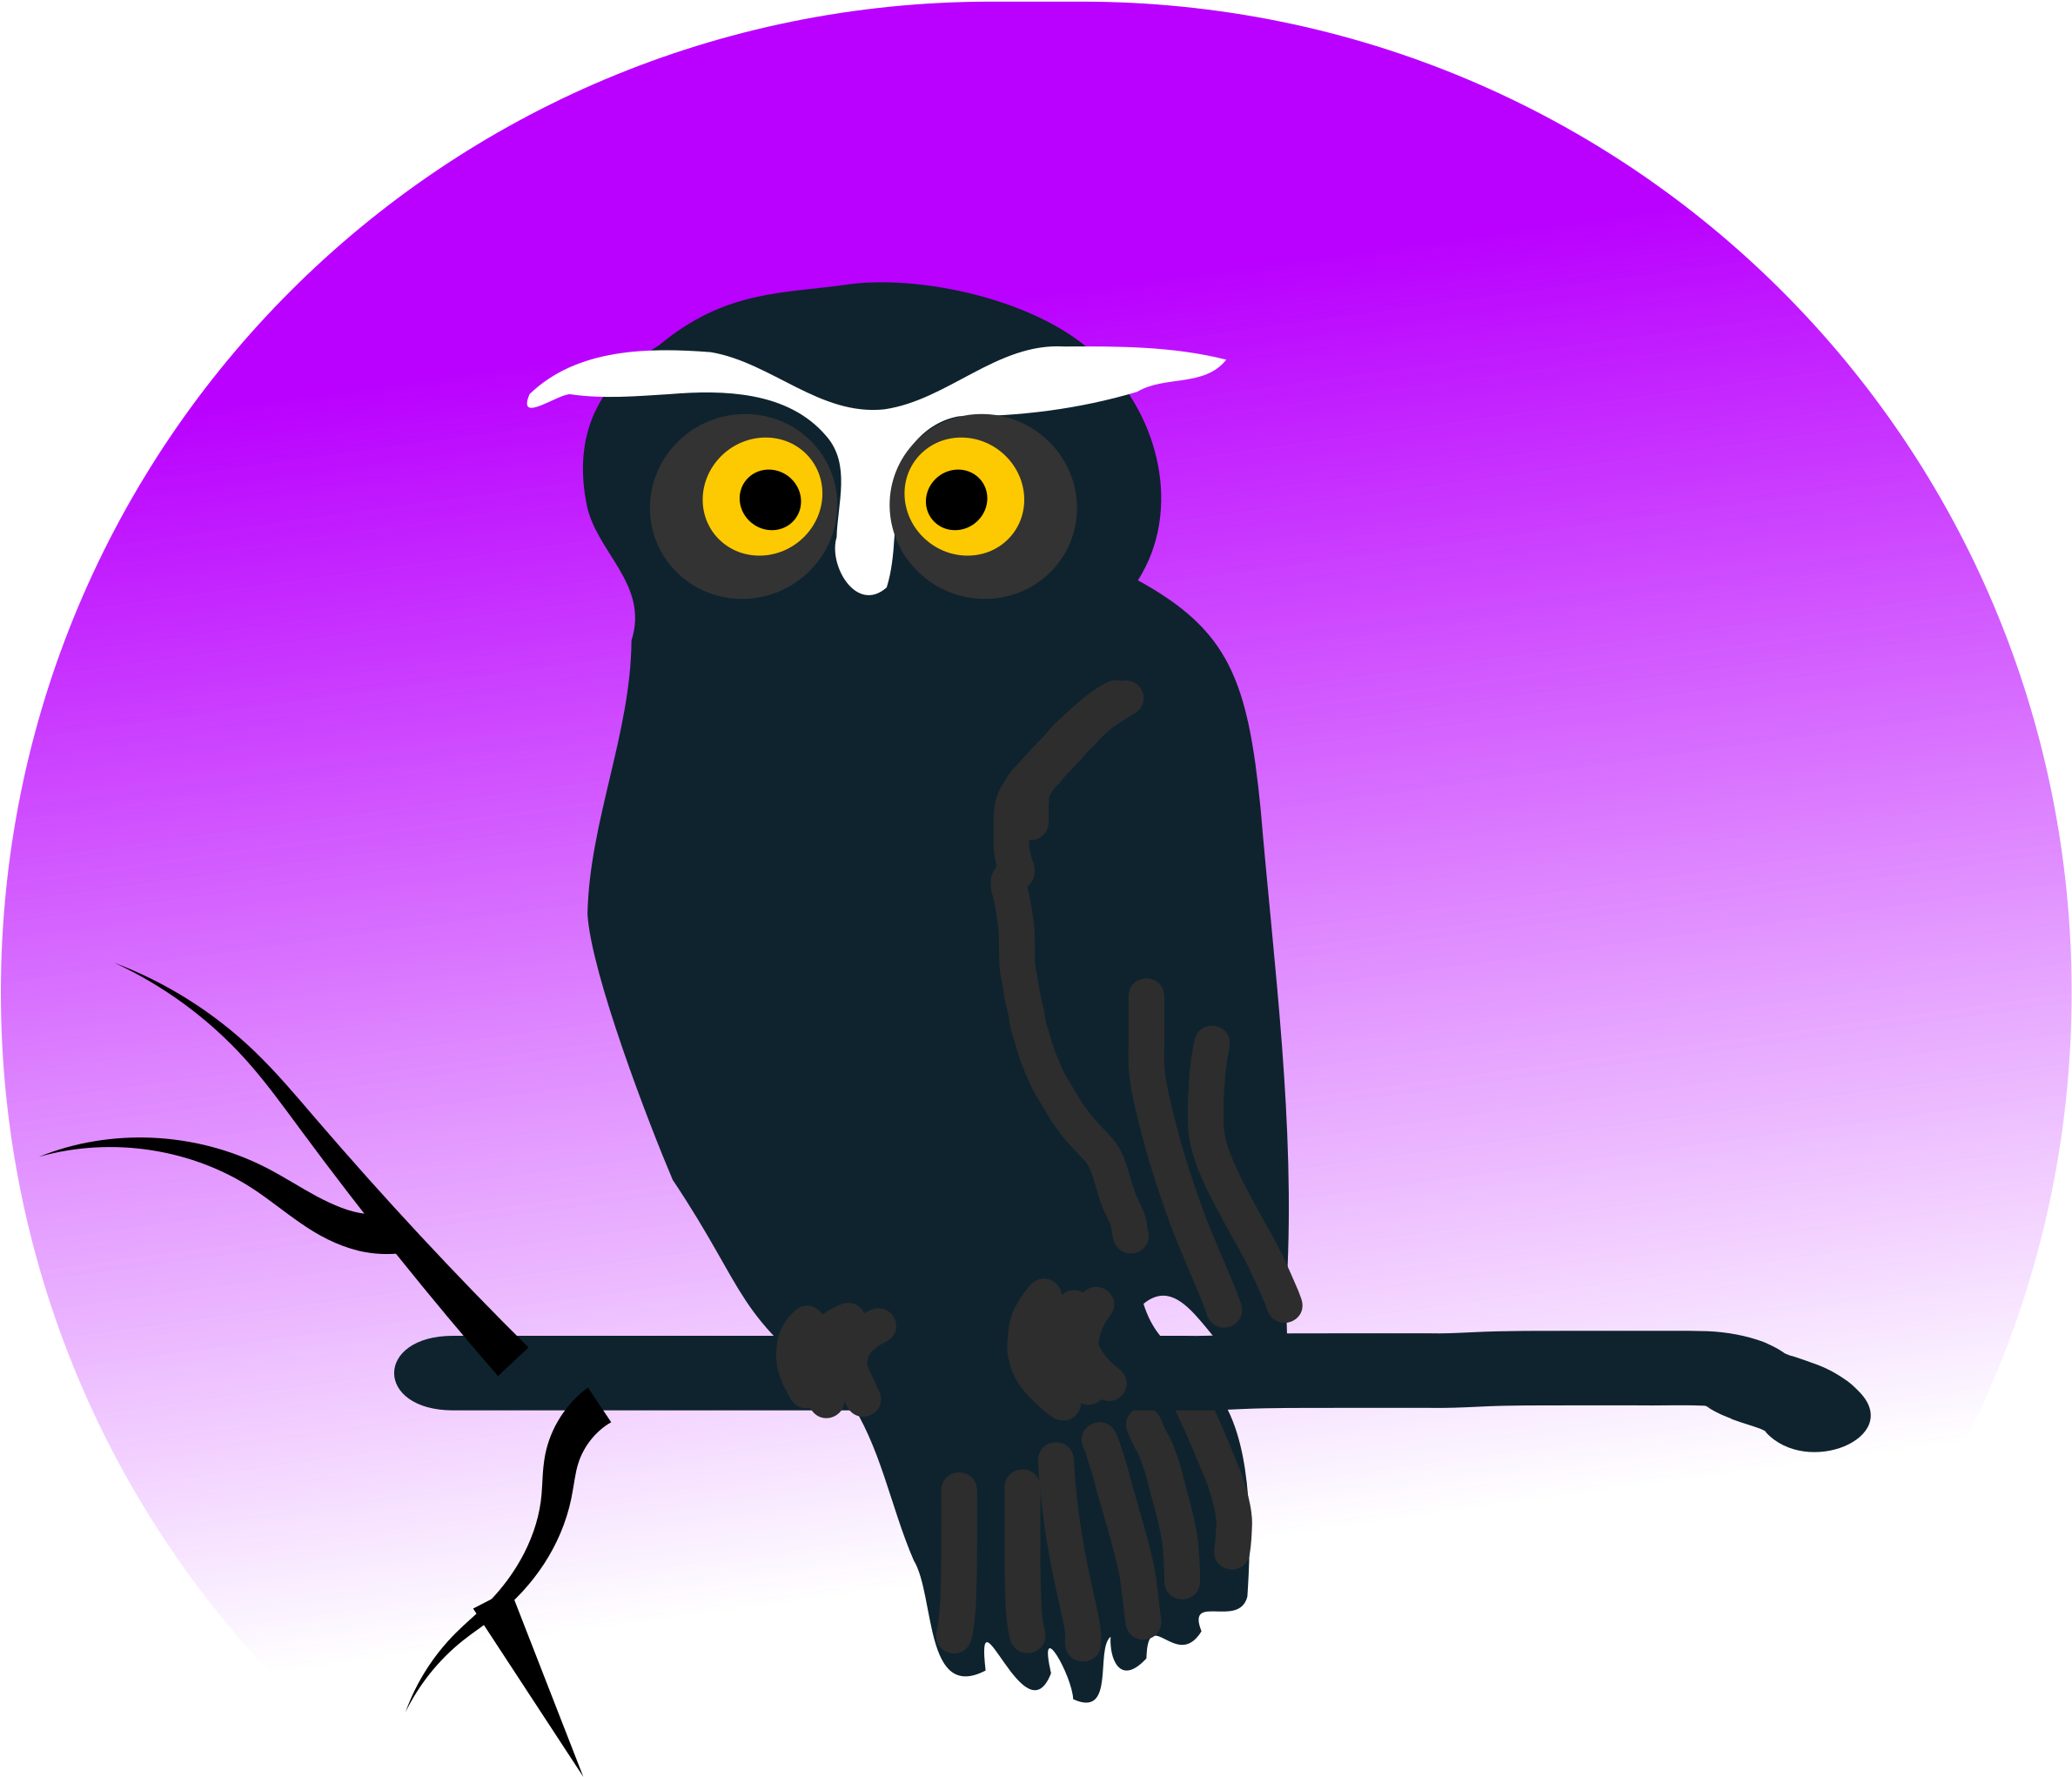 A Cartoon Of An Owl On A Branch